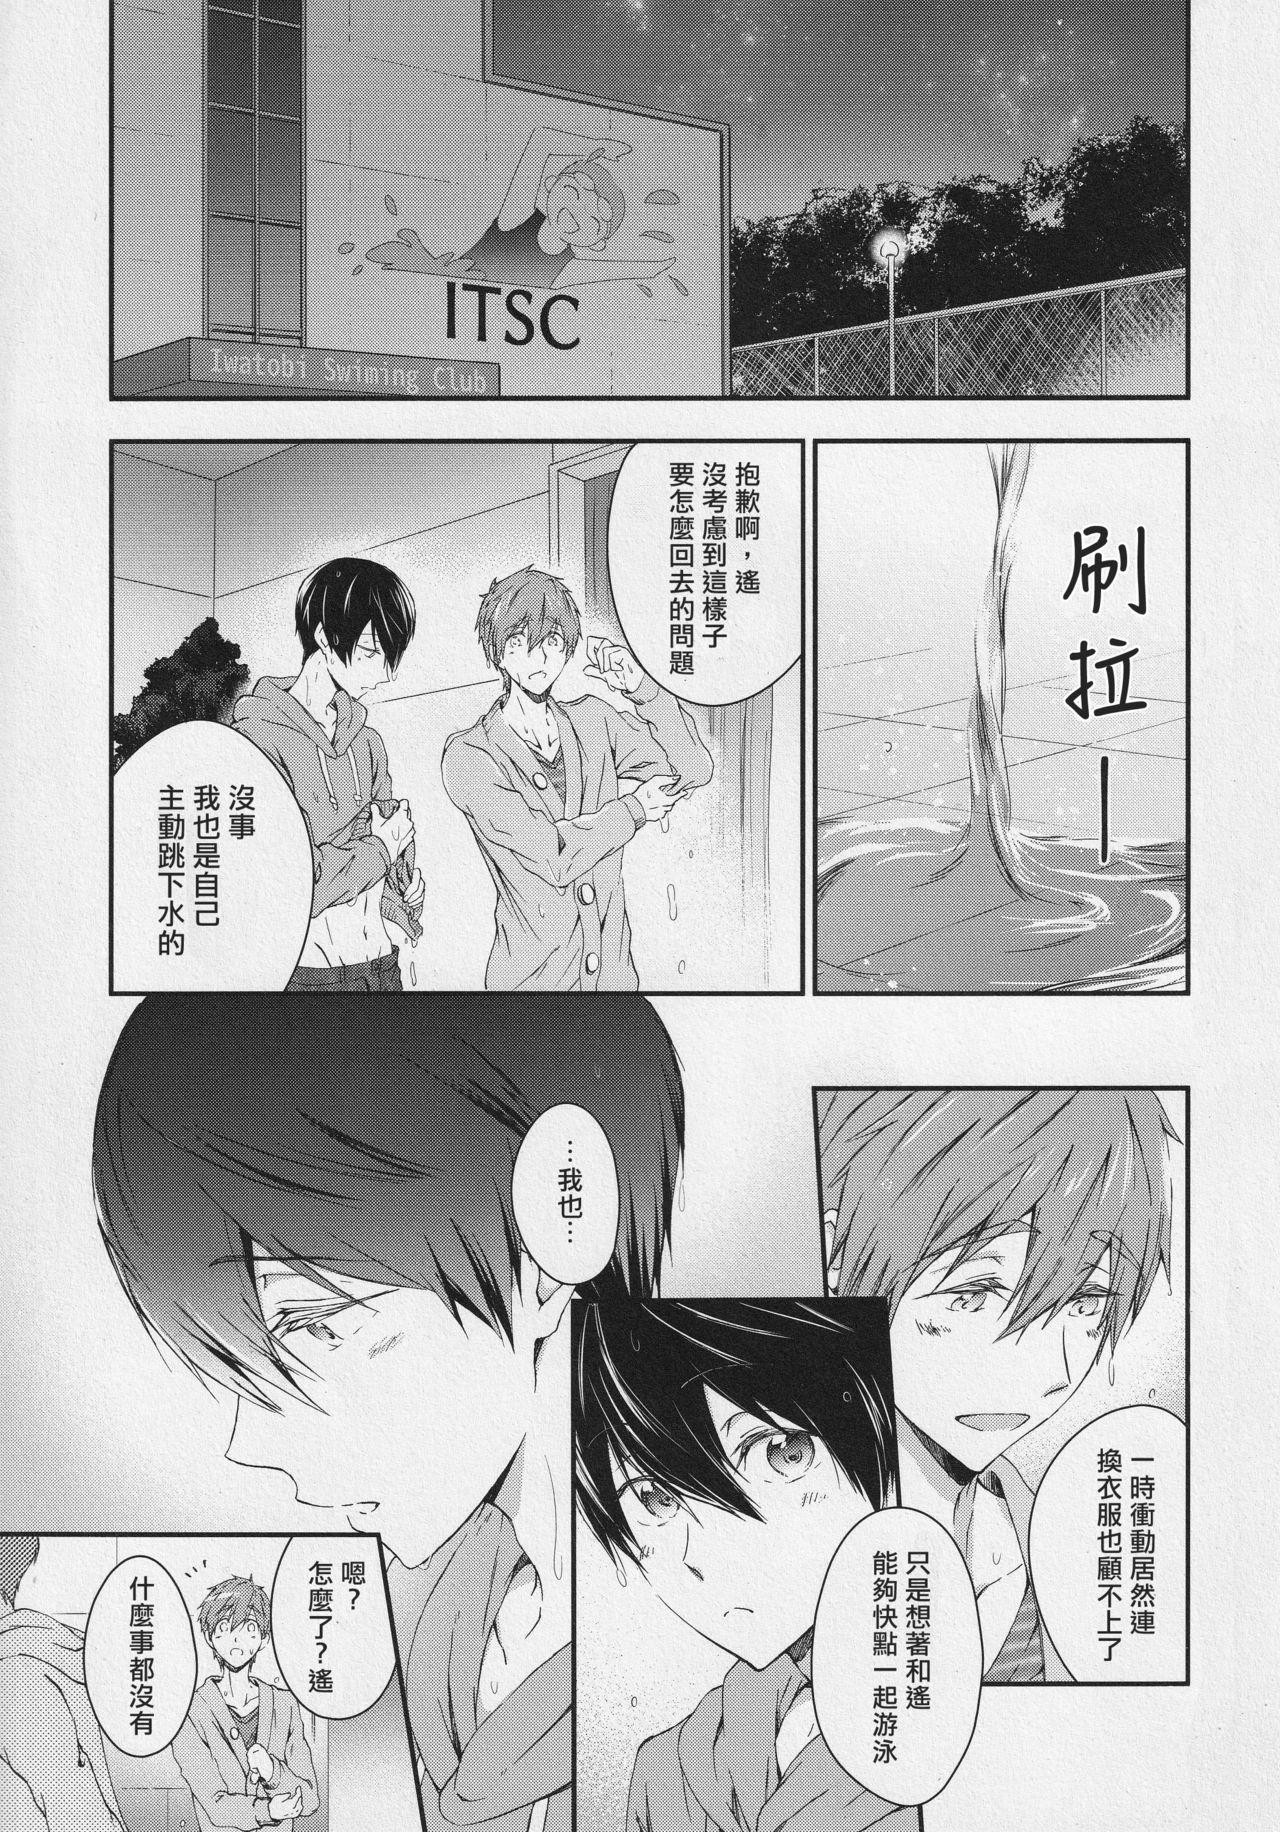 Str8 Naisho no Yofukashi - Free Licking - Page 2